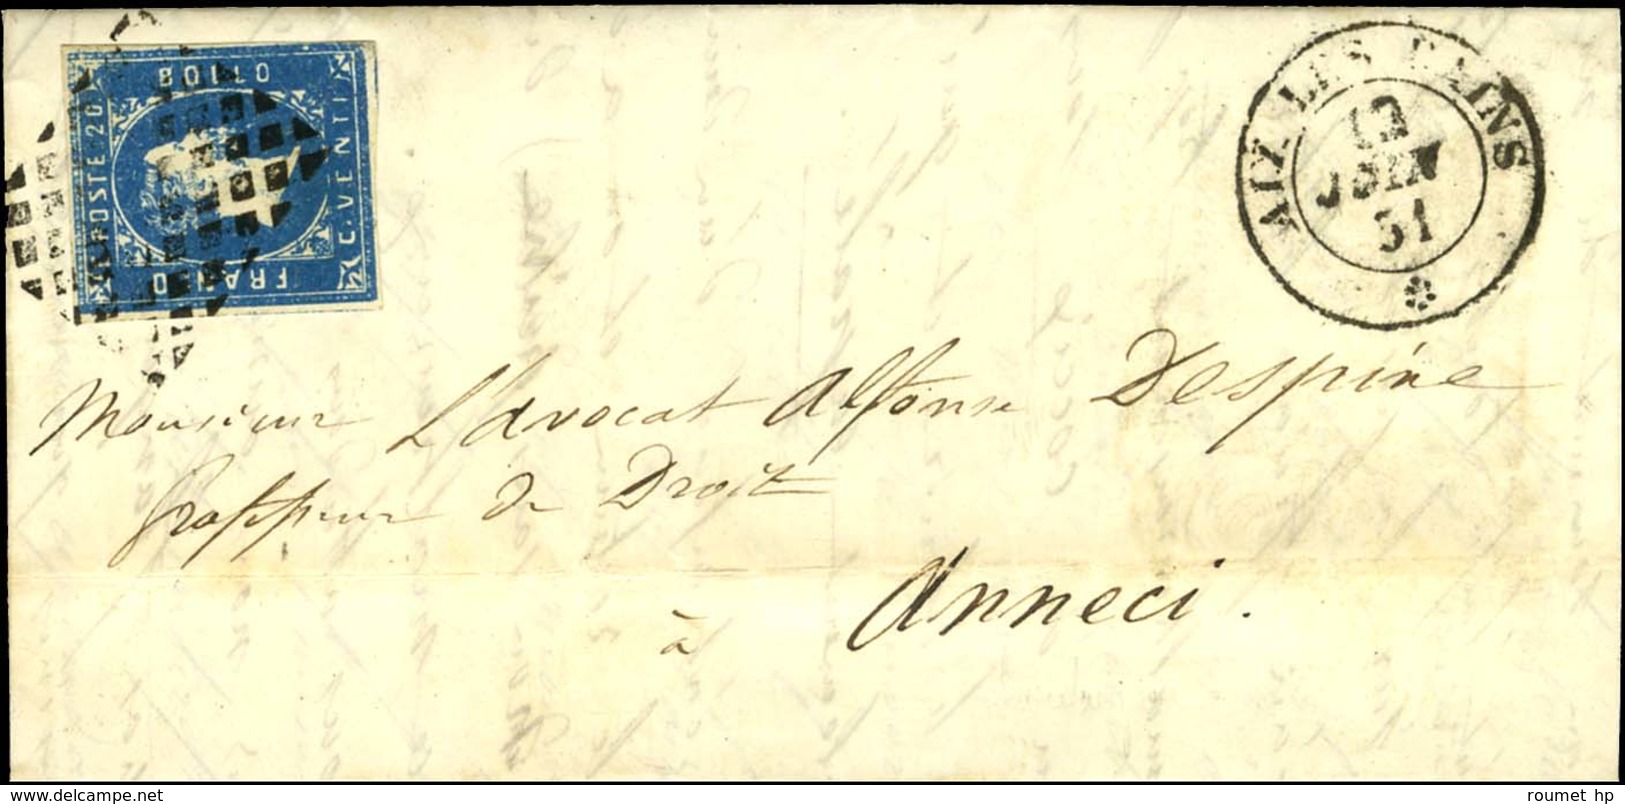 Grille / Sardaigne N° 2 Càd AIX-LES-BAINS / * Sur Lettre Pour Annecy. 1851. - TB. - 1849-1876: Periodo Classico